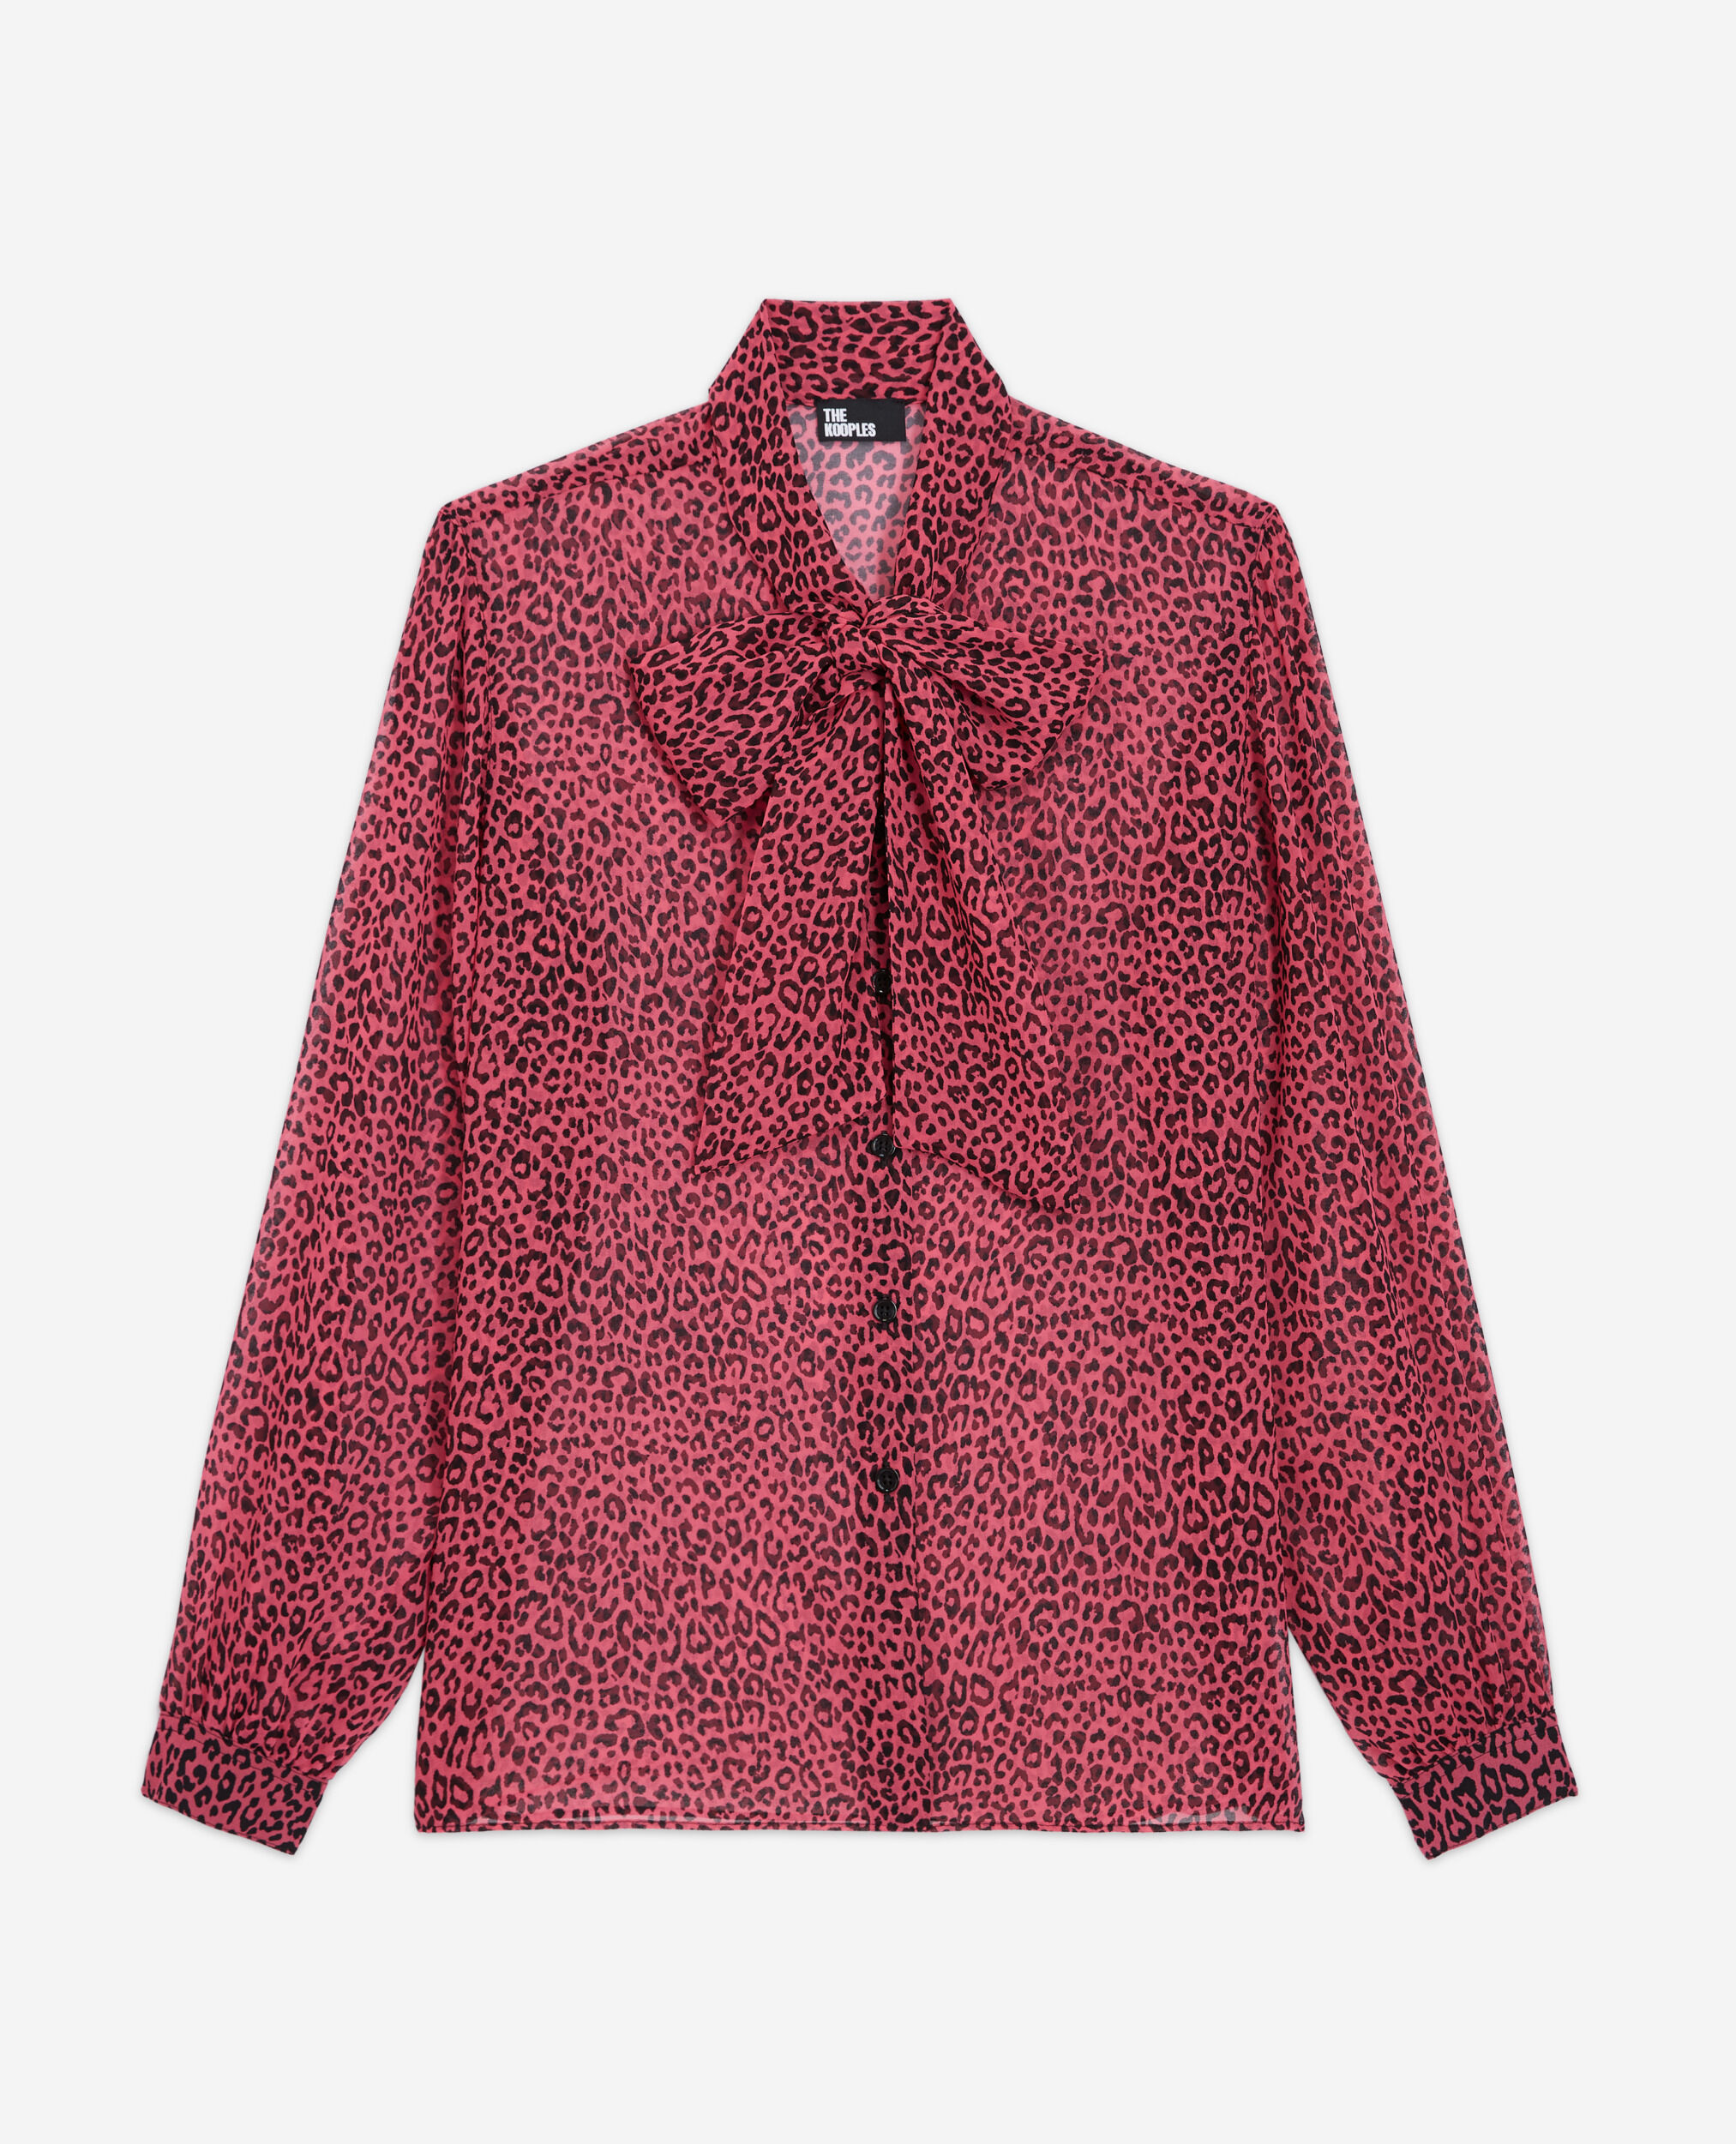 Camisa leopardo rosa, PINK BLACK, hi-res image number null